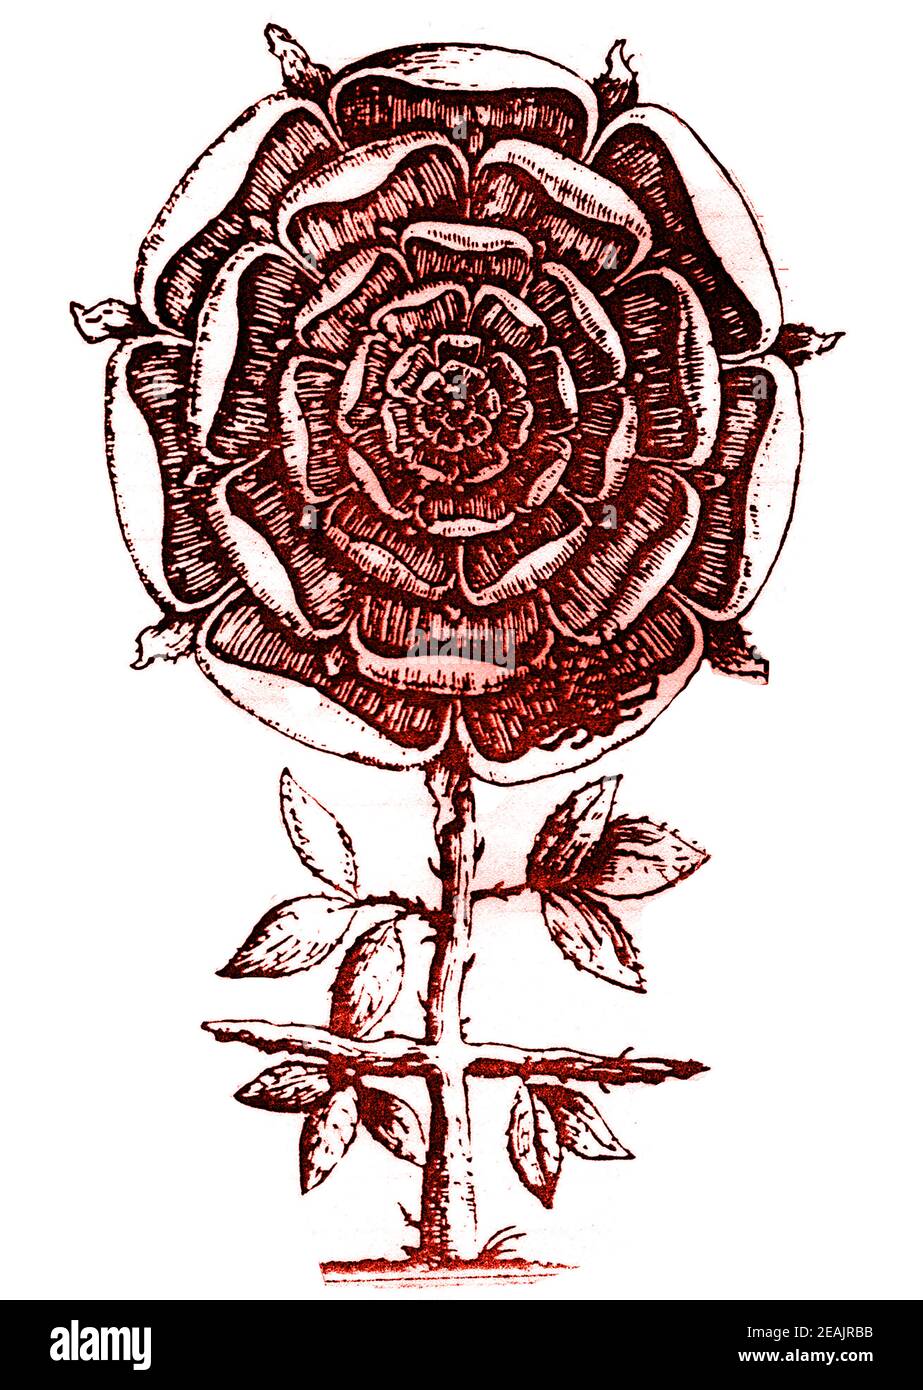 ROSENKREUZ / ROSENKREUZ - EINE symbolische Beschreibung des Rosenkreuzes aus dem 17th. Jahrhundert, die eine Rose auf einem dornigen Kreuz enthält.- die Symbolik ist weit verbreitet in Magie, Mystik, Gnostizismus, Alchemie, Religion und natürlich im Rosenkreuzer Orden. Stockfoto